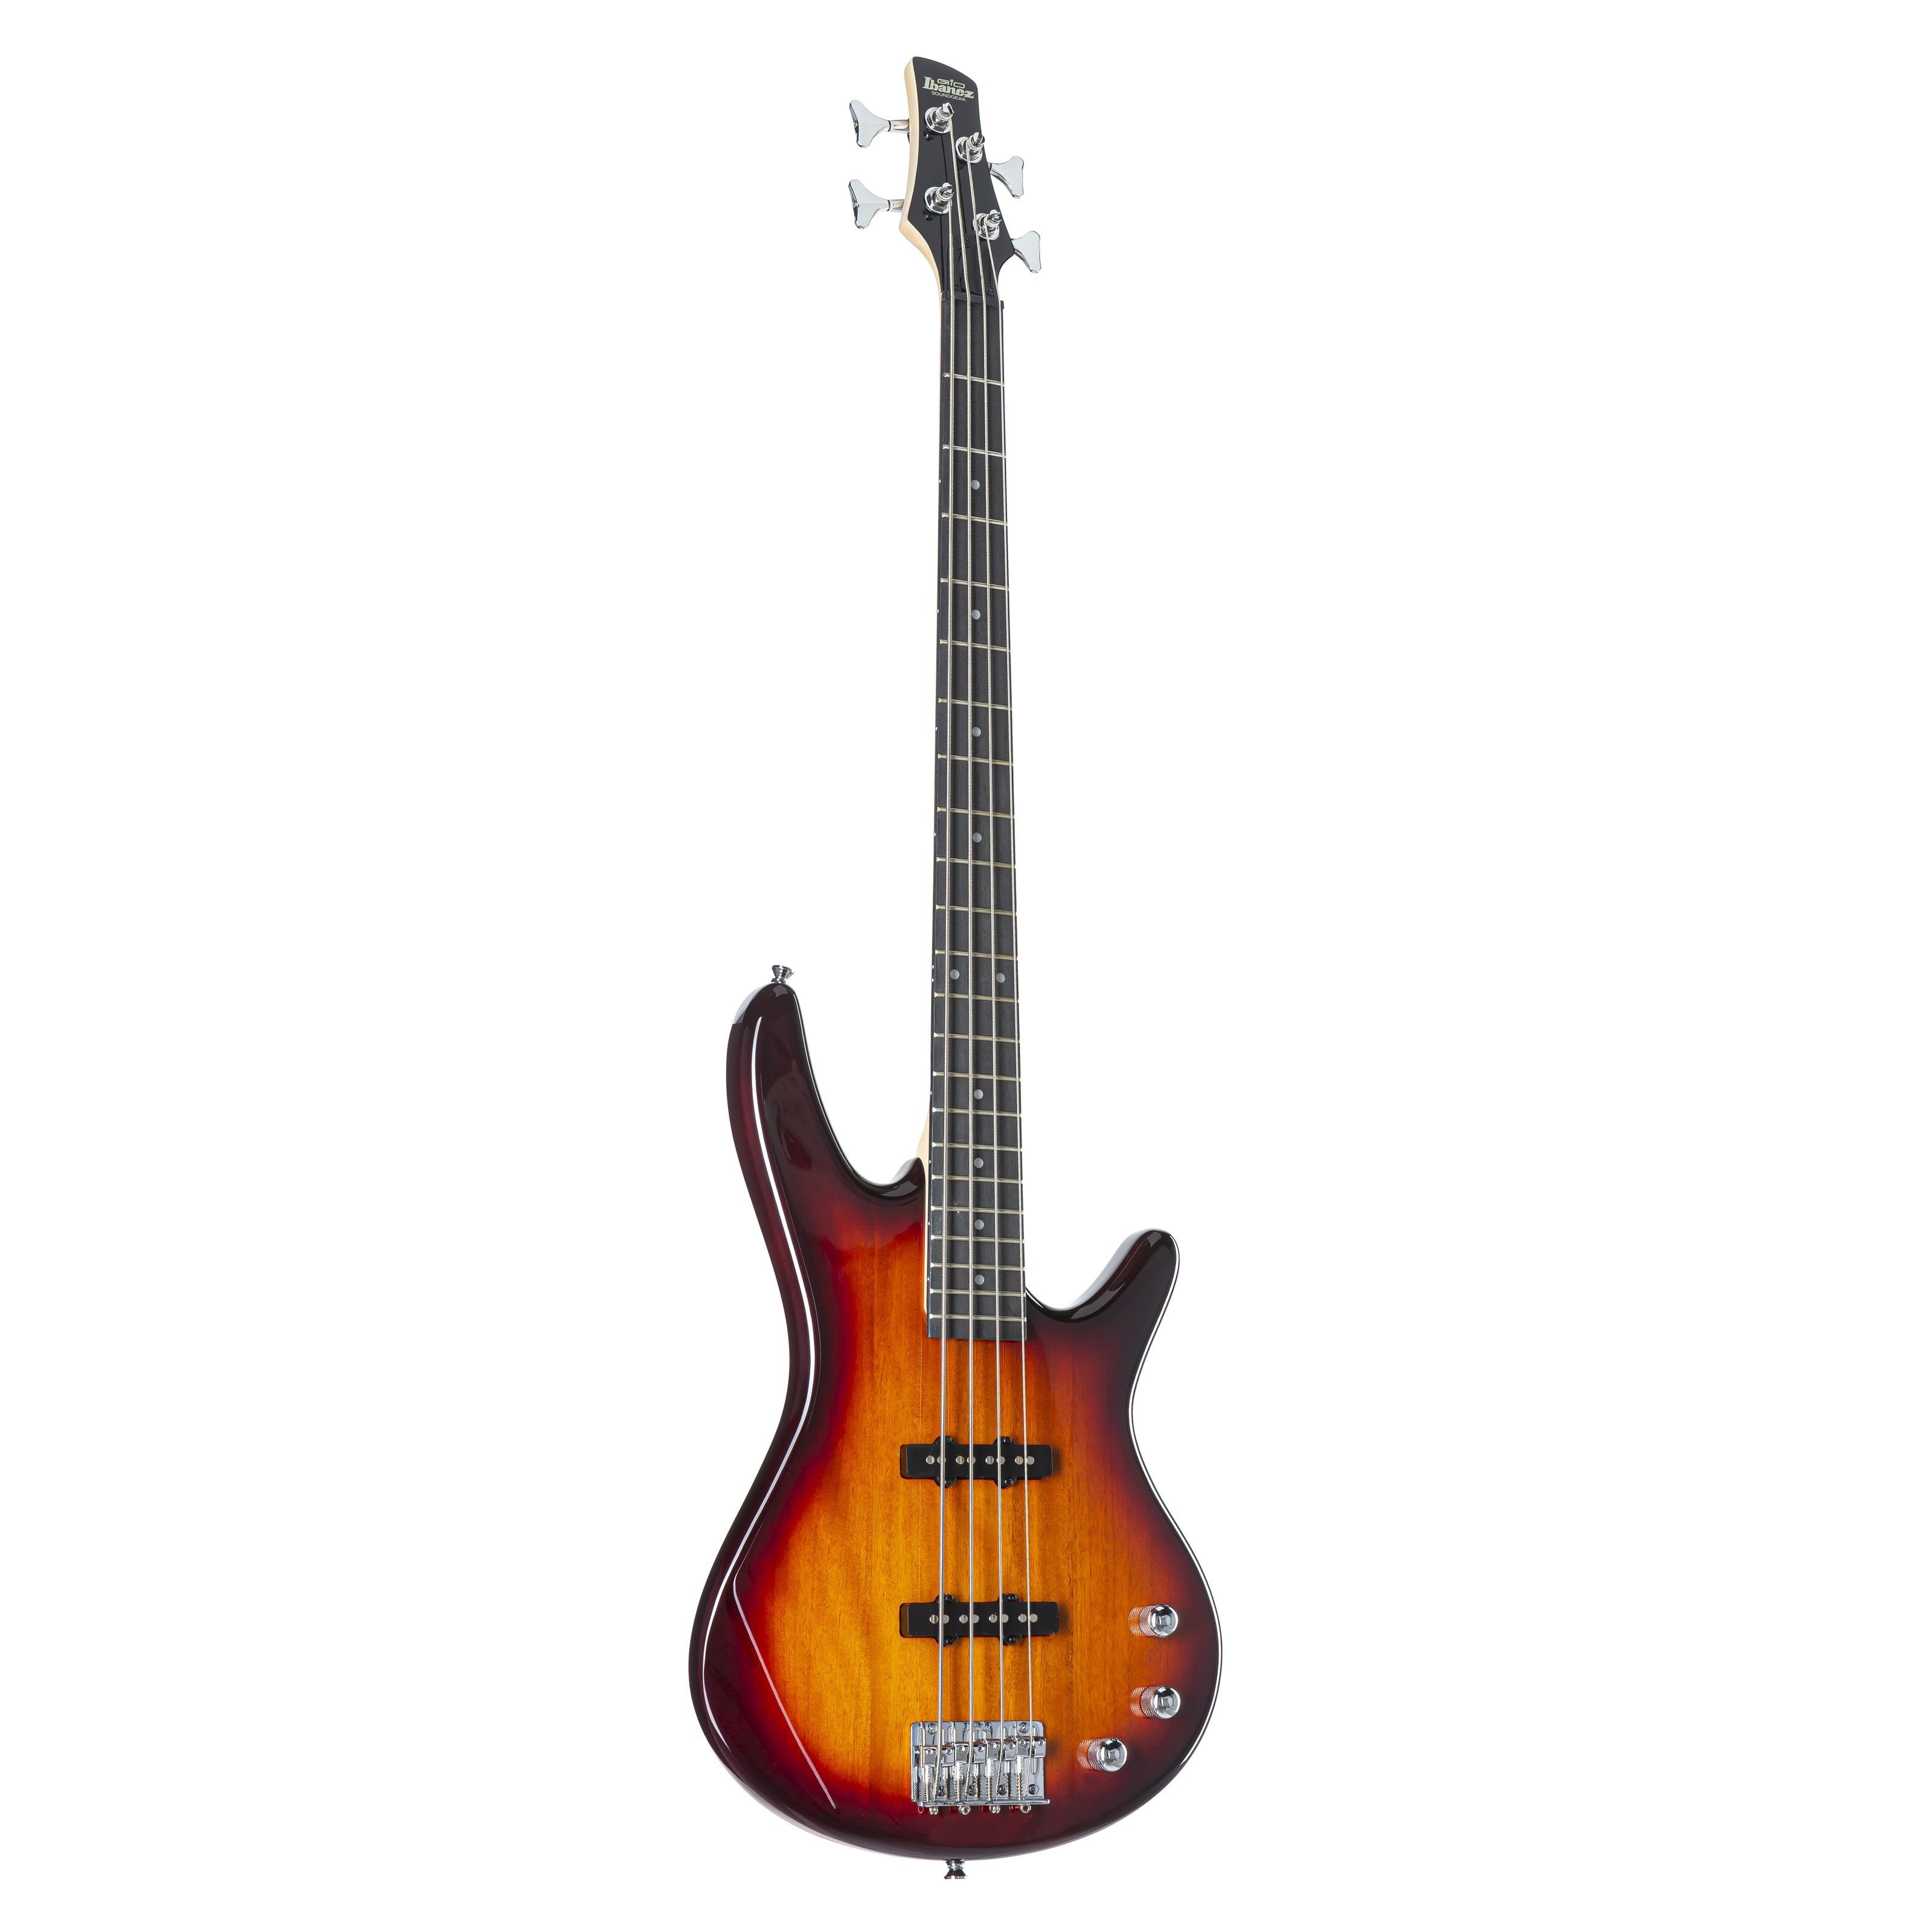 Ibanez E-Bass, GSR 180 Brown Sunburst, GSR 180 Brown Sunburst - E-Bass